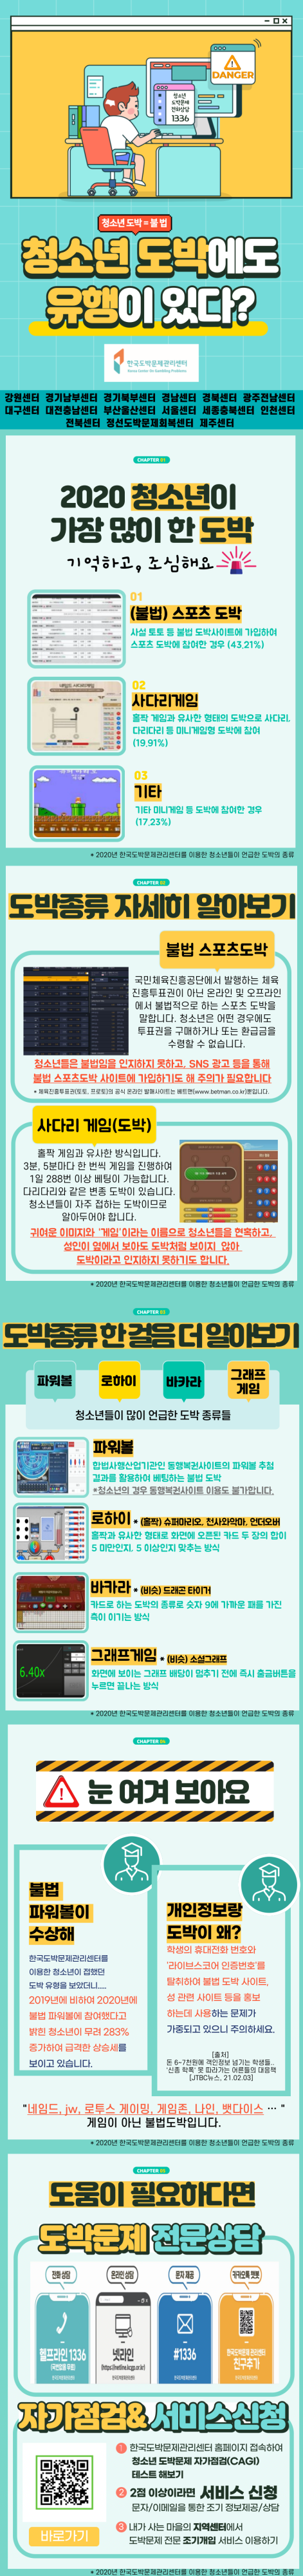 충청북도교육청 학교자치과_카드뉴스(2월)_도박유형_합본